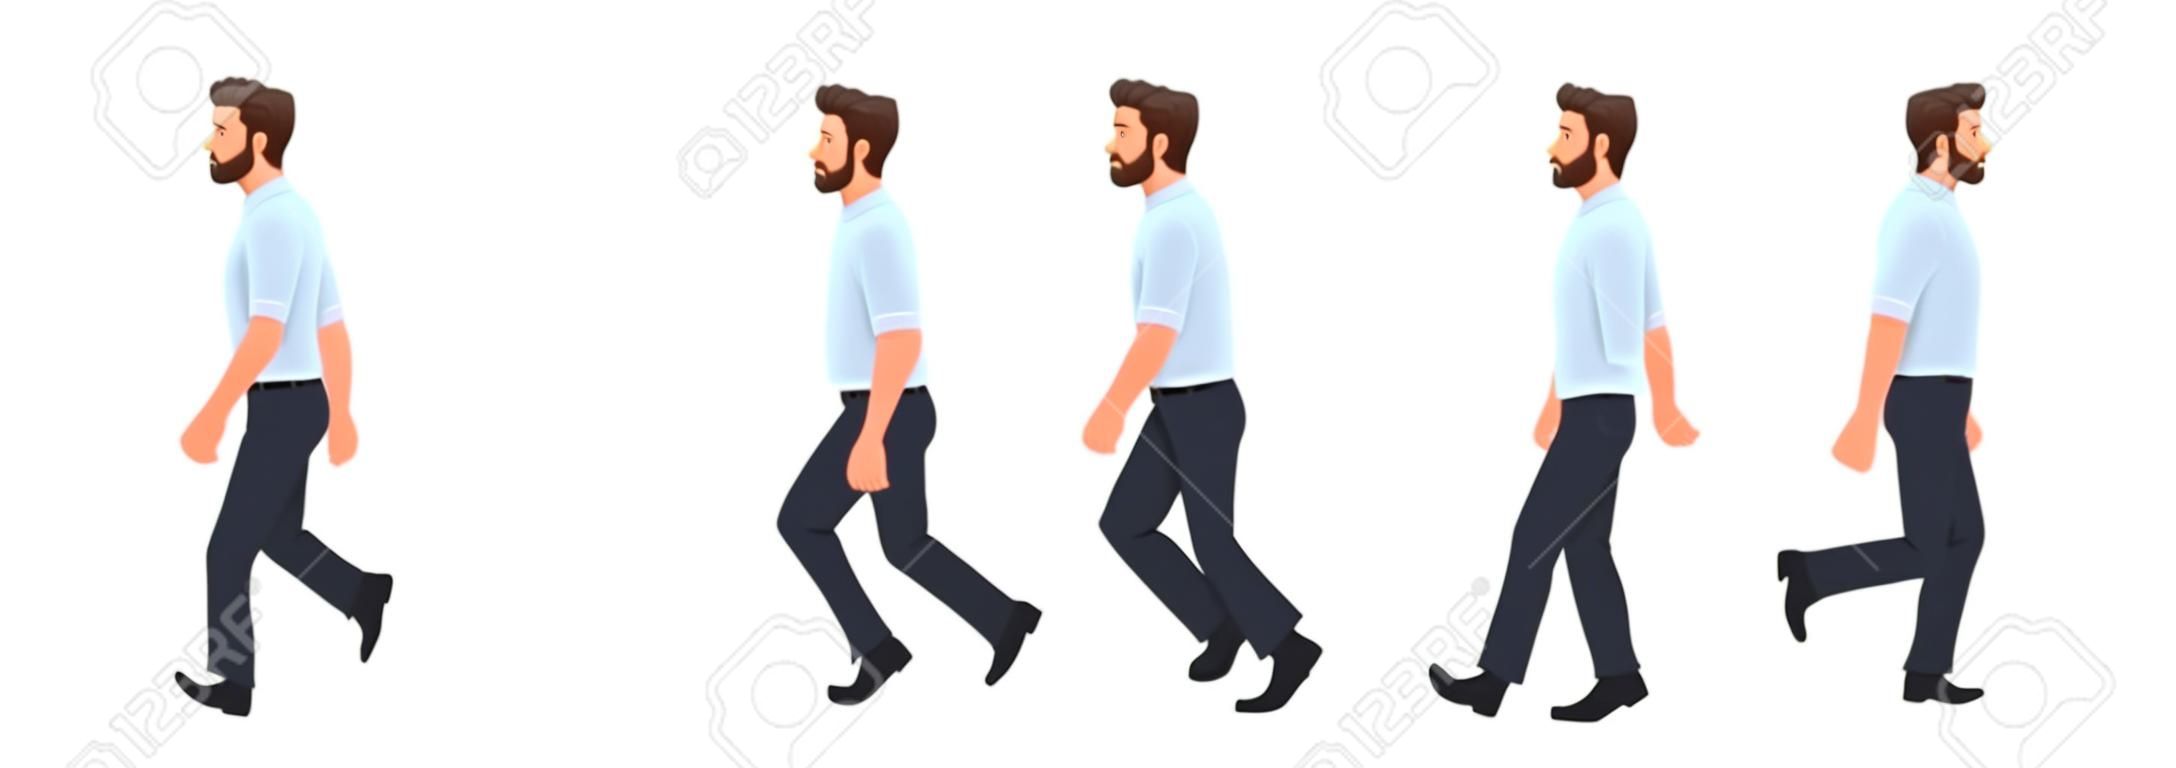 Animacja chodzenia postaci człowieka. spacery biznesmena, cykl zdjęć krok po kroku. ilustracja wektorowa w stylu kreskówki